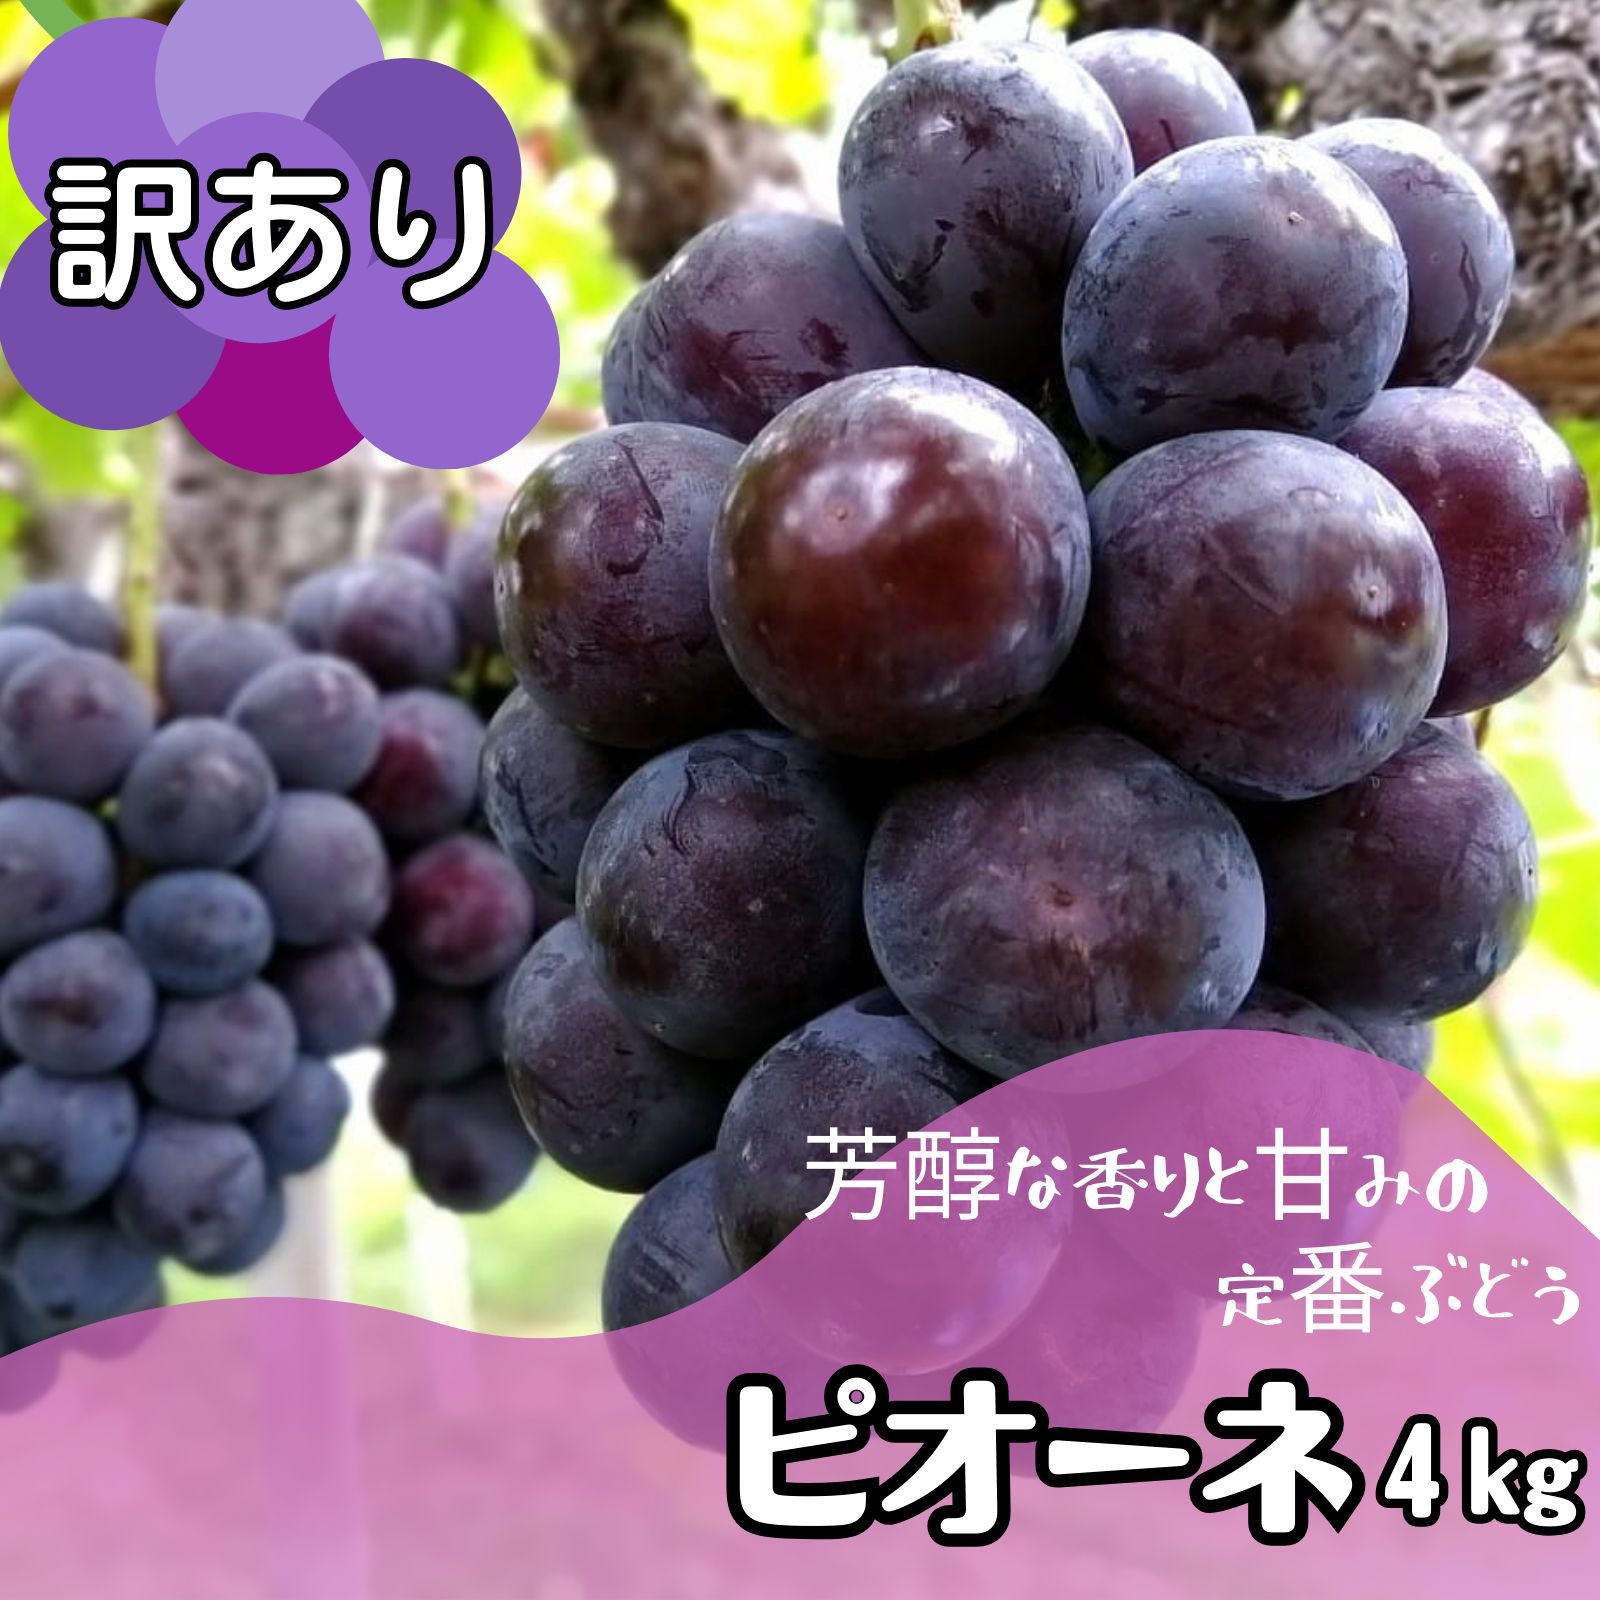 とれたて♪岡山県産減農薬シャインマスカットアンド翠峰合わせて2kg